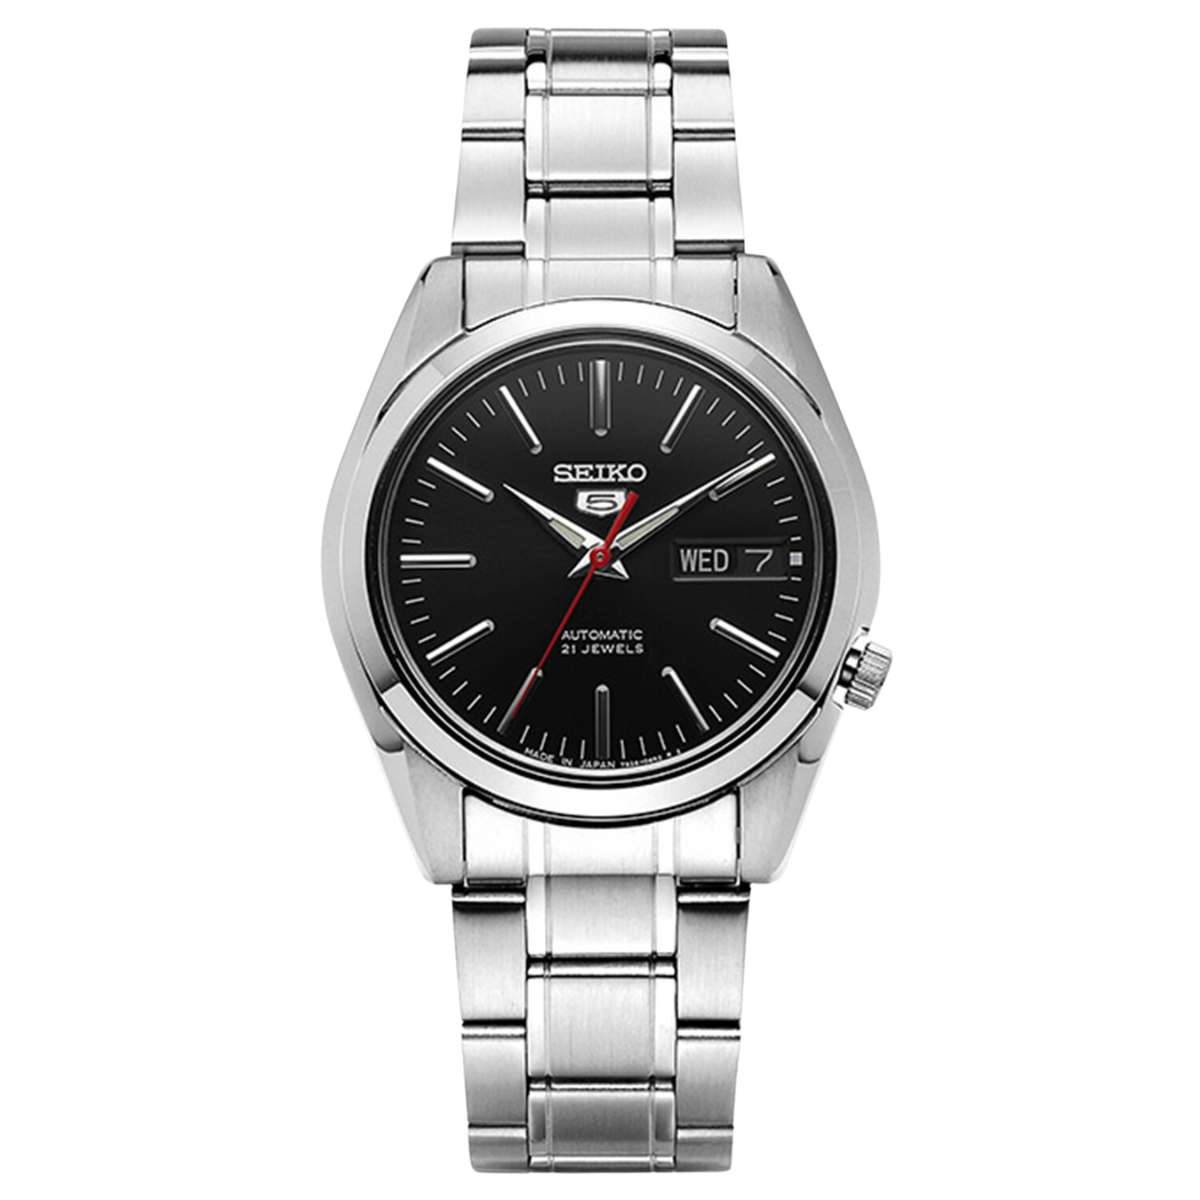 นาฬิกา SEIKO 5 Series 21 Jewels Men's Watch รุ่น SNKL45 SNKL45K SNKL45K1 Automatic